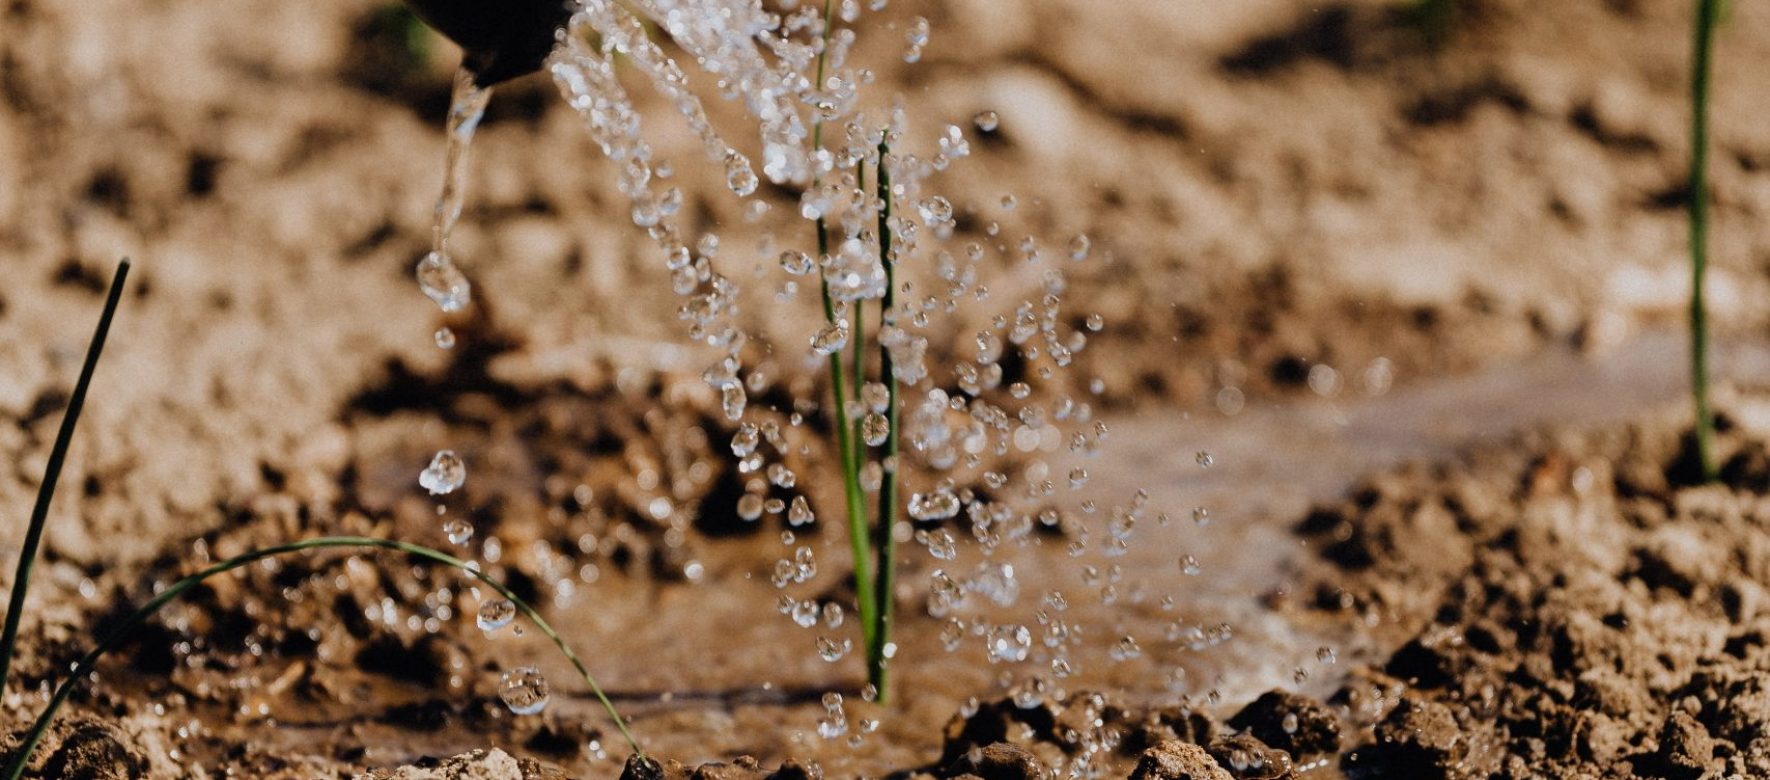 Le Maroc fait face à une sécheresse dangereuse pour son agriculture. Le gouvernement lance un programme exceptionnel d’un milliard d’€